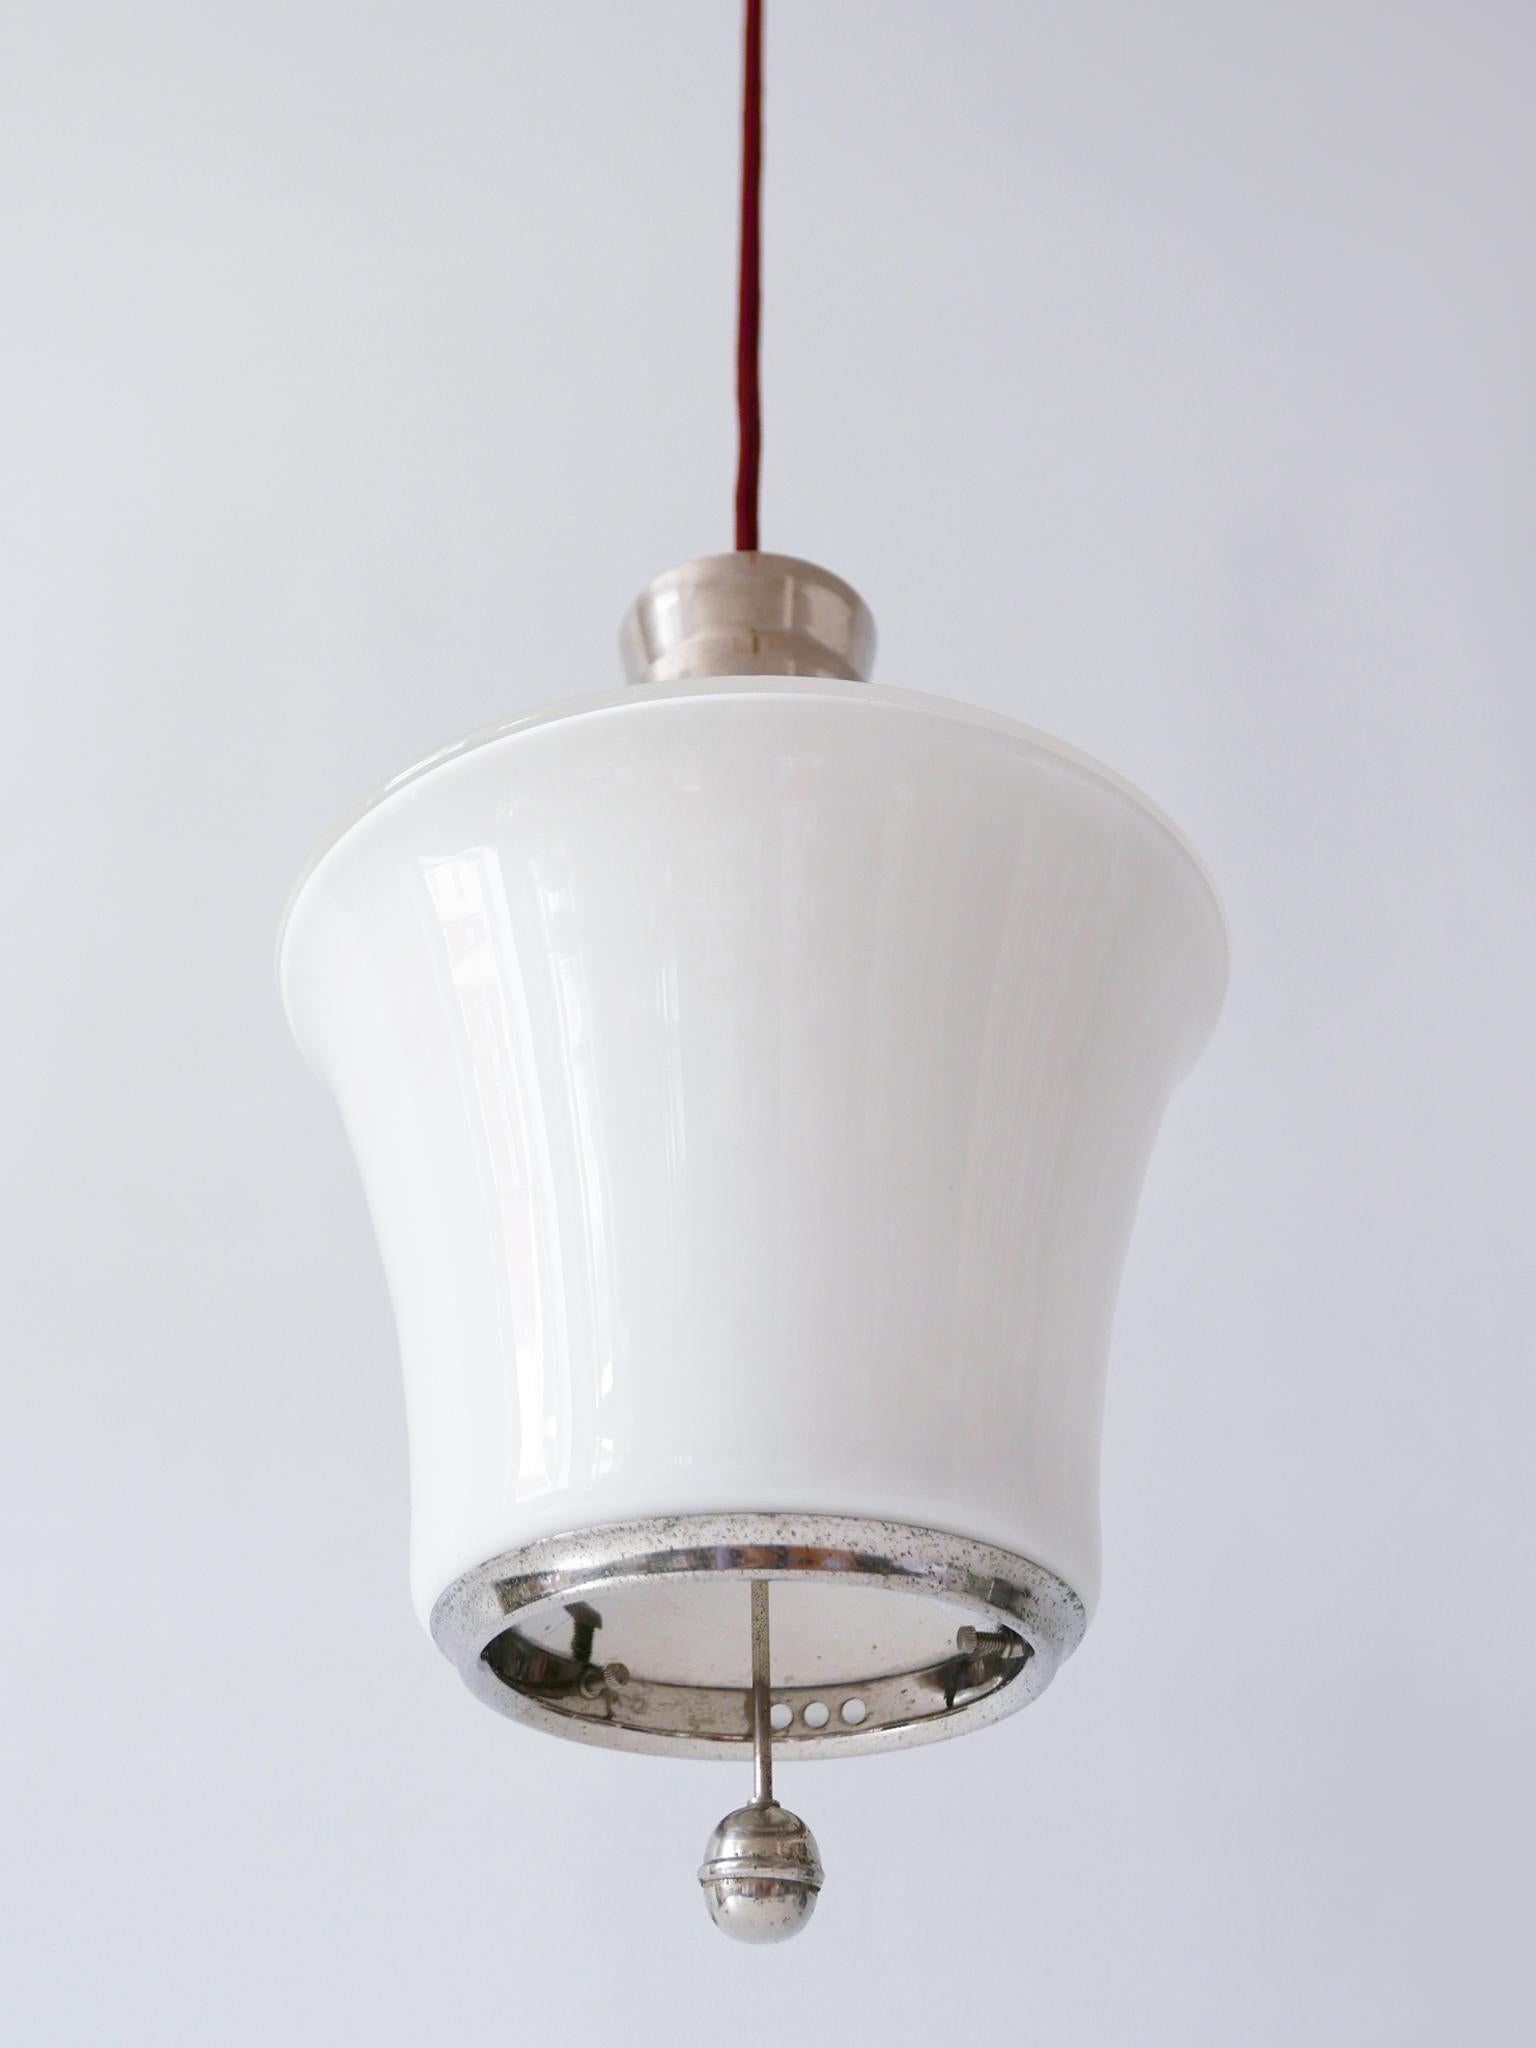 Exceptional Dr. Twerdy Original Bauhaus Art Deco Pendant Lamp, 1920s, Germany For Sale 11